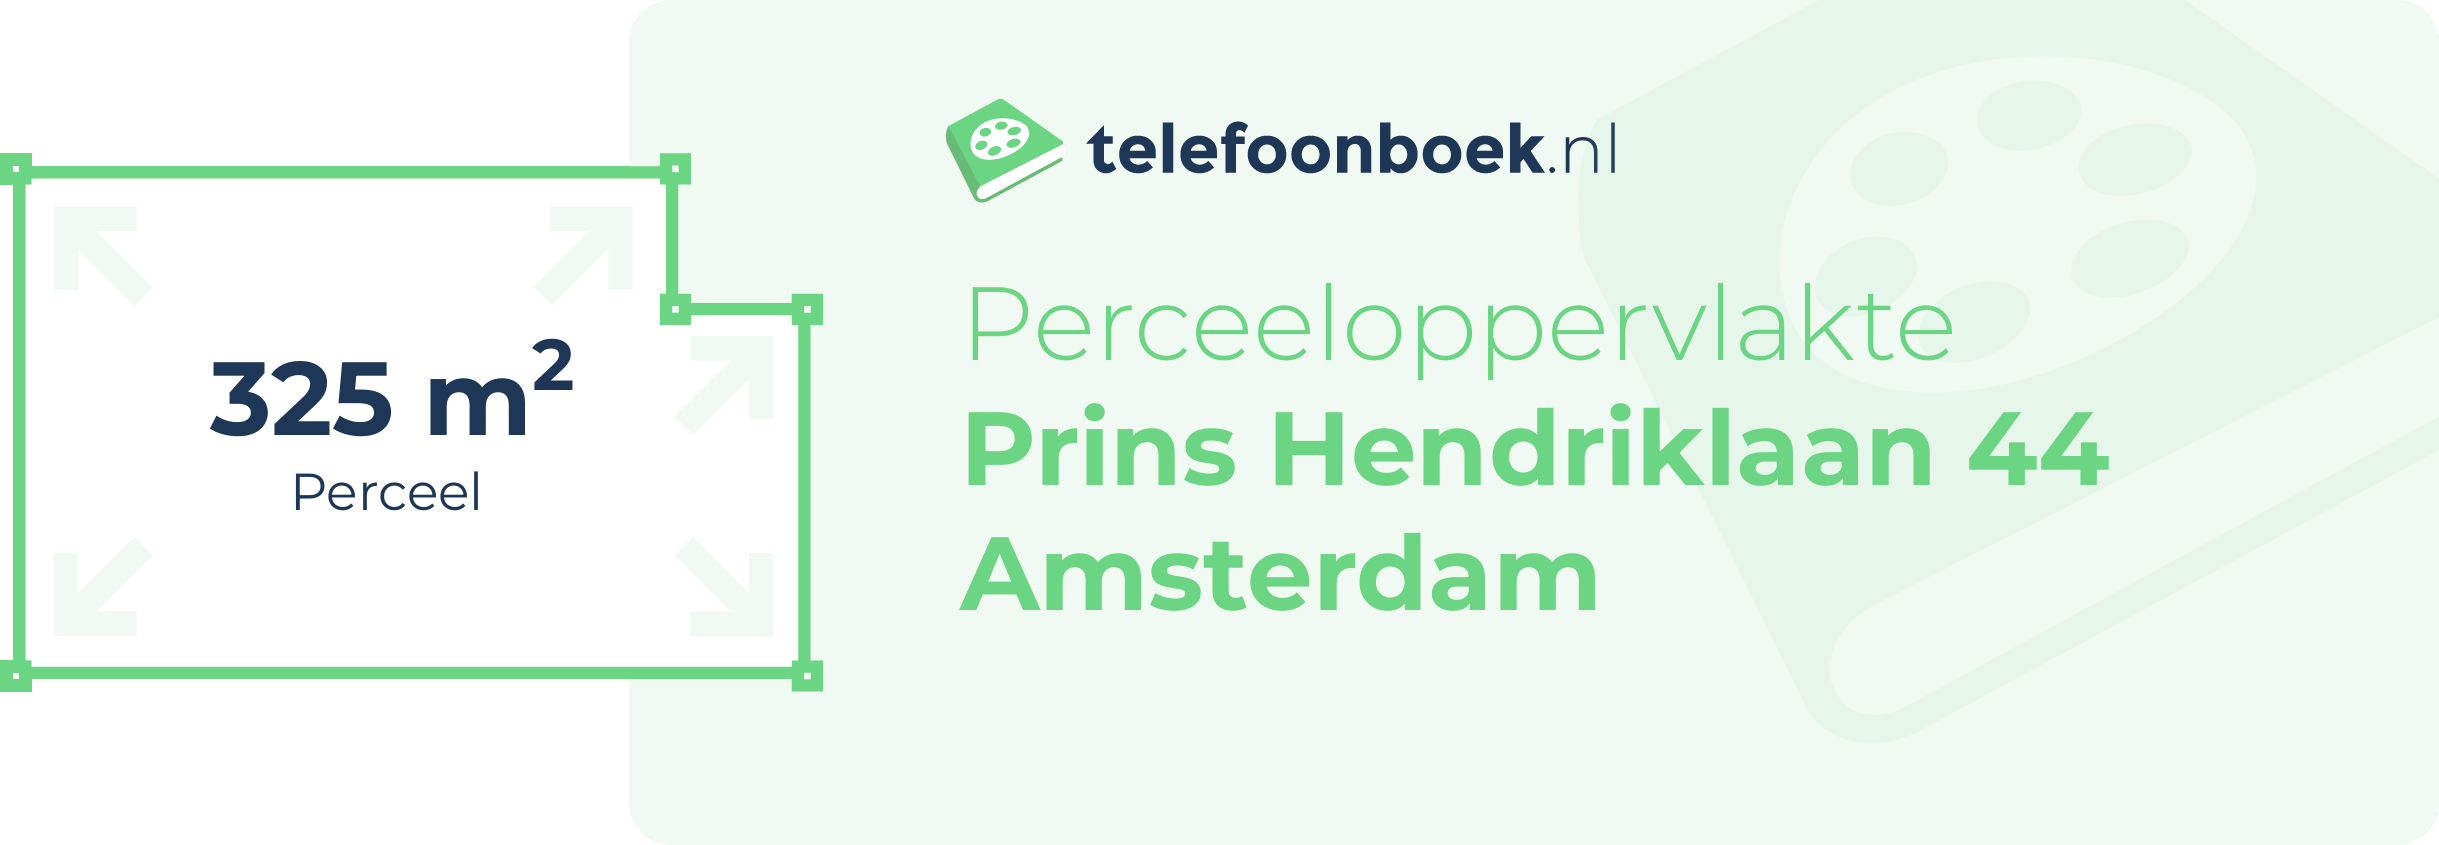 Perceeloppervlakte Prins Hendriklaan 44 Amsterdam